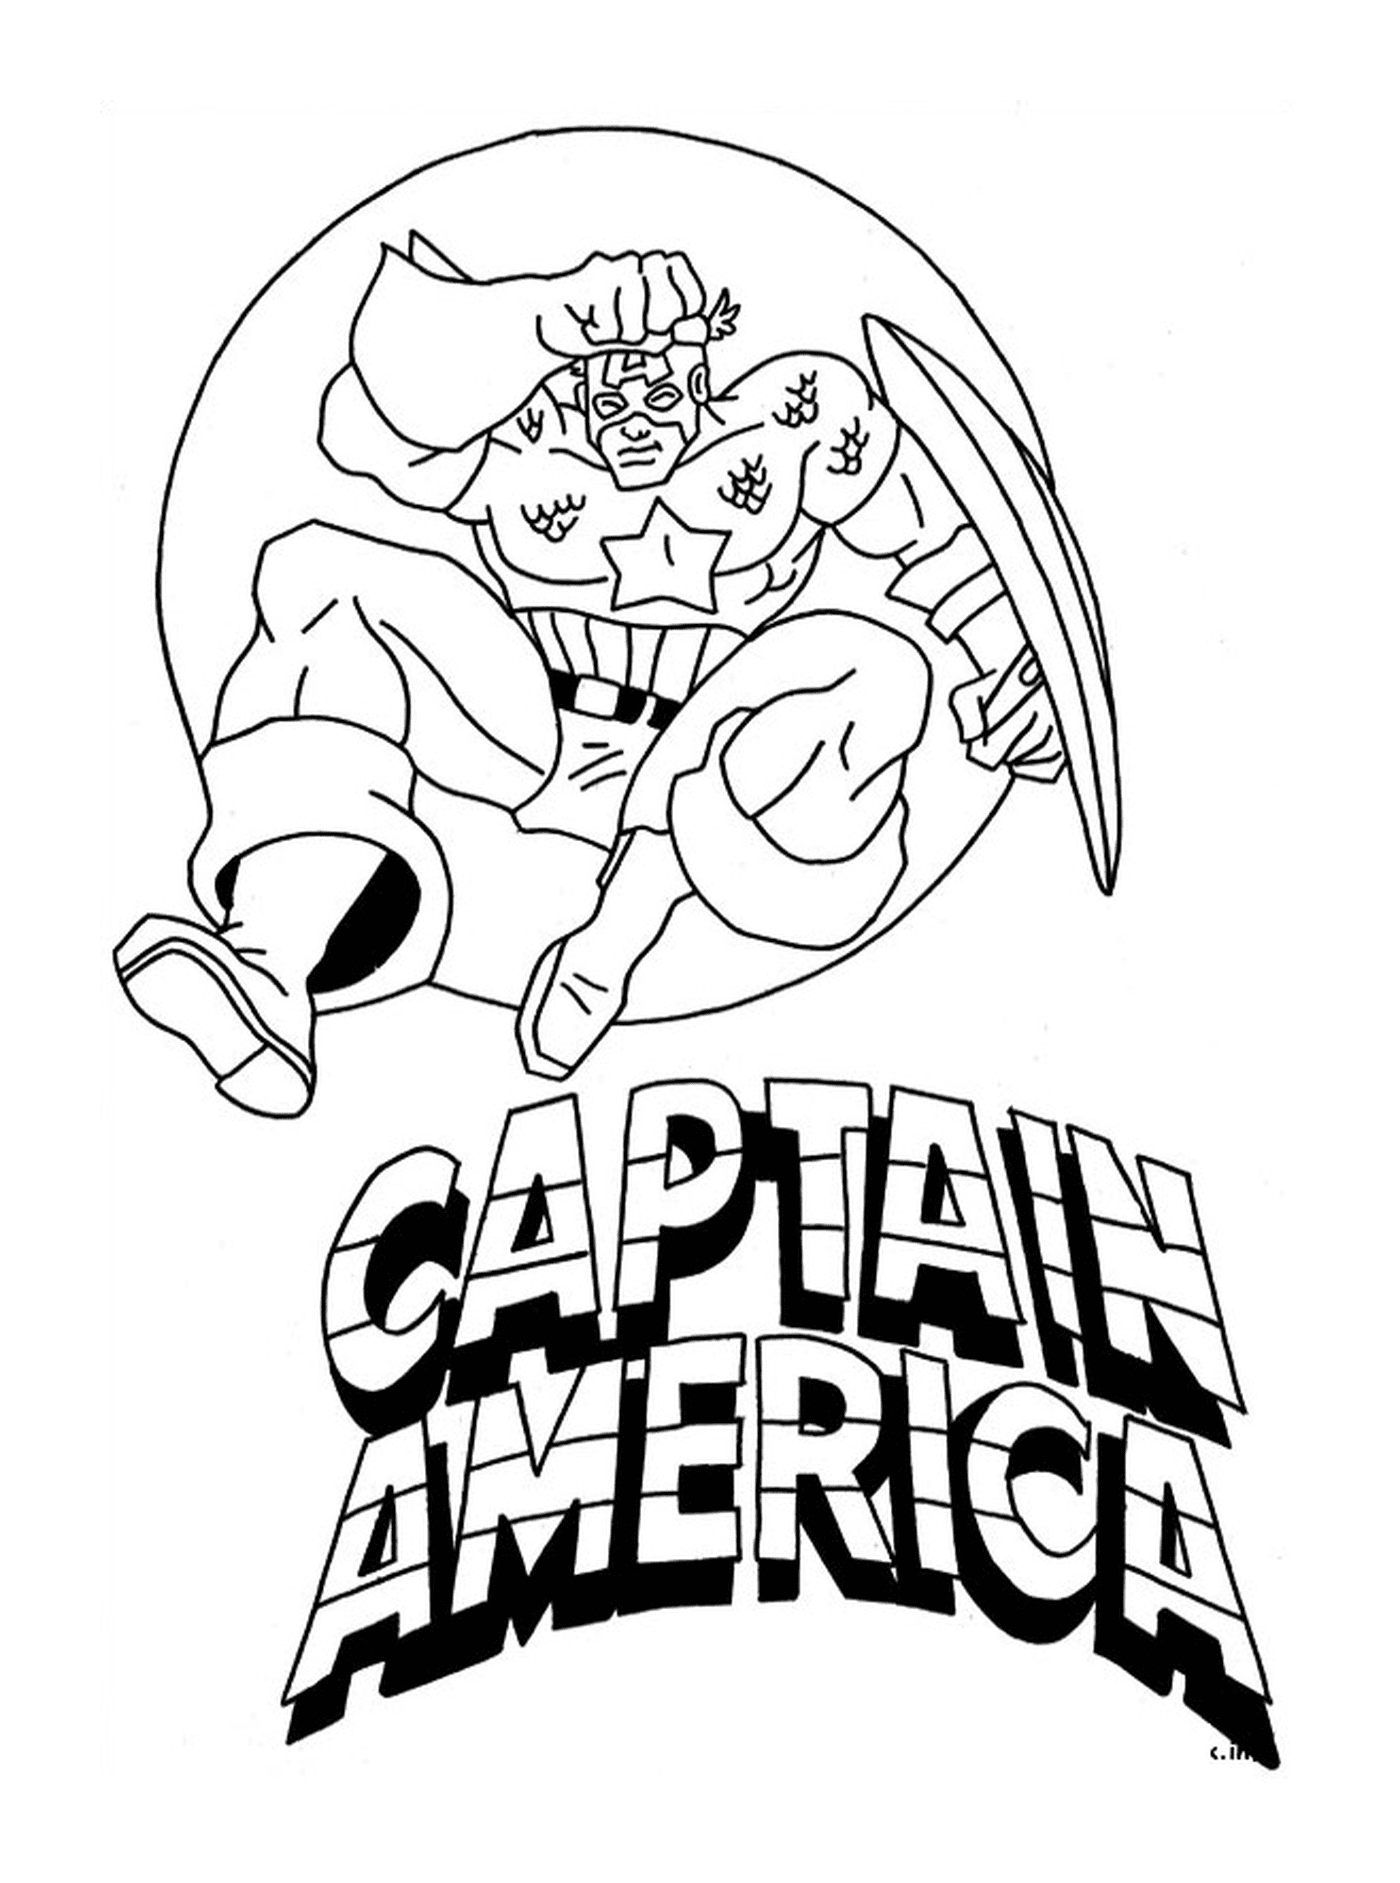  Капитан Америка с логотипом, фотография Капитана Америка 